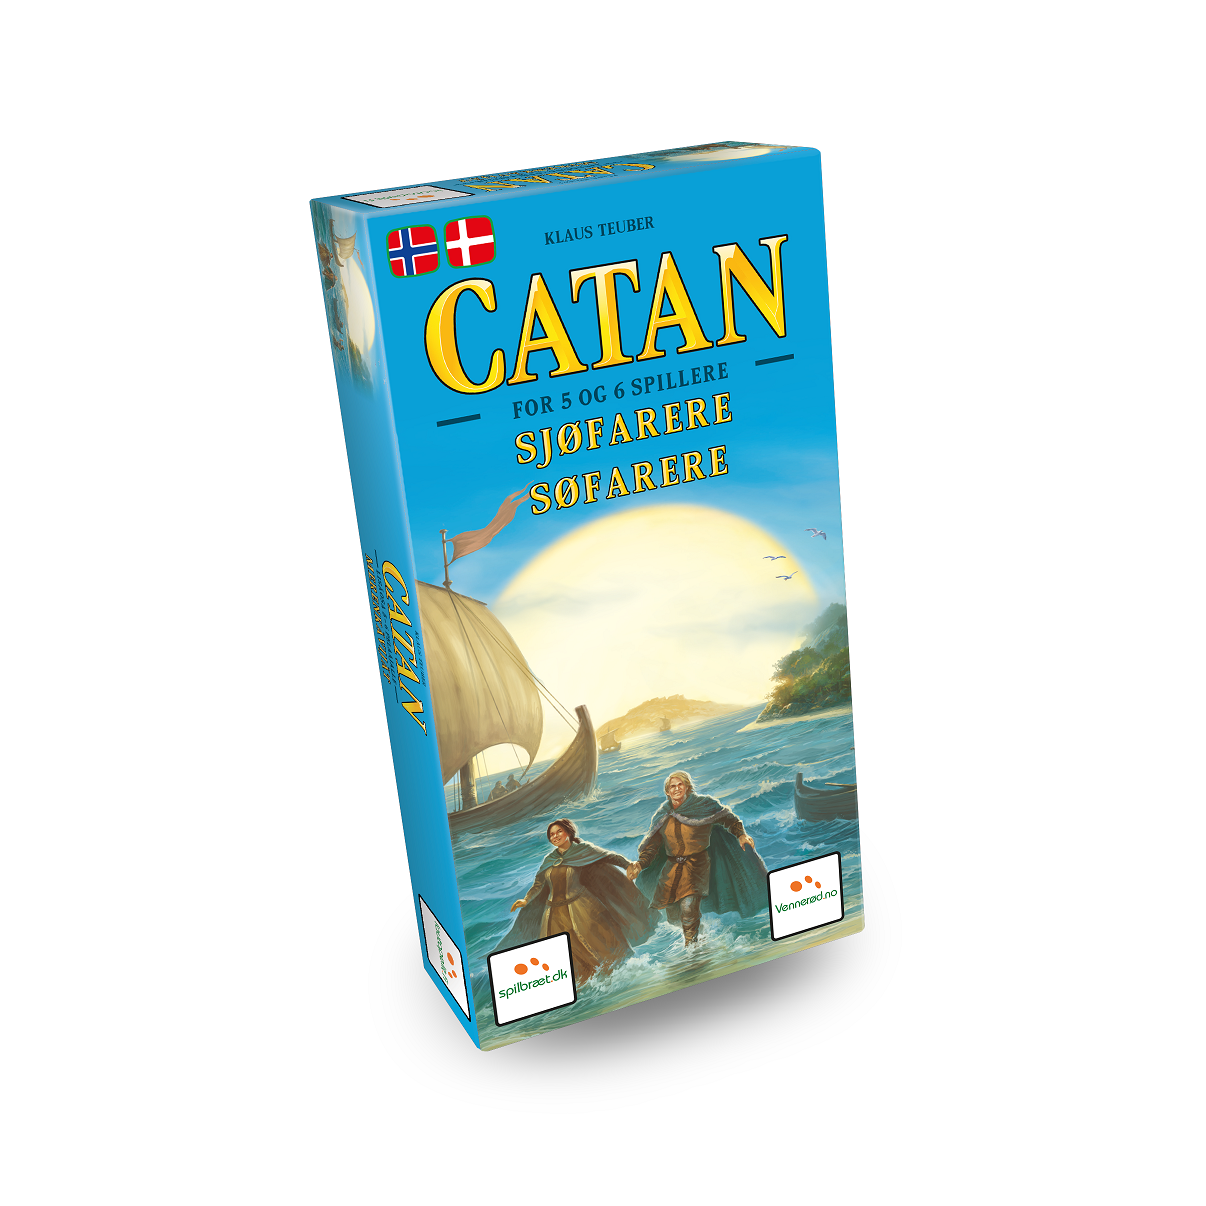 Settlers fra Catan 5-6 spiller udvidelse